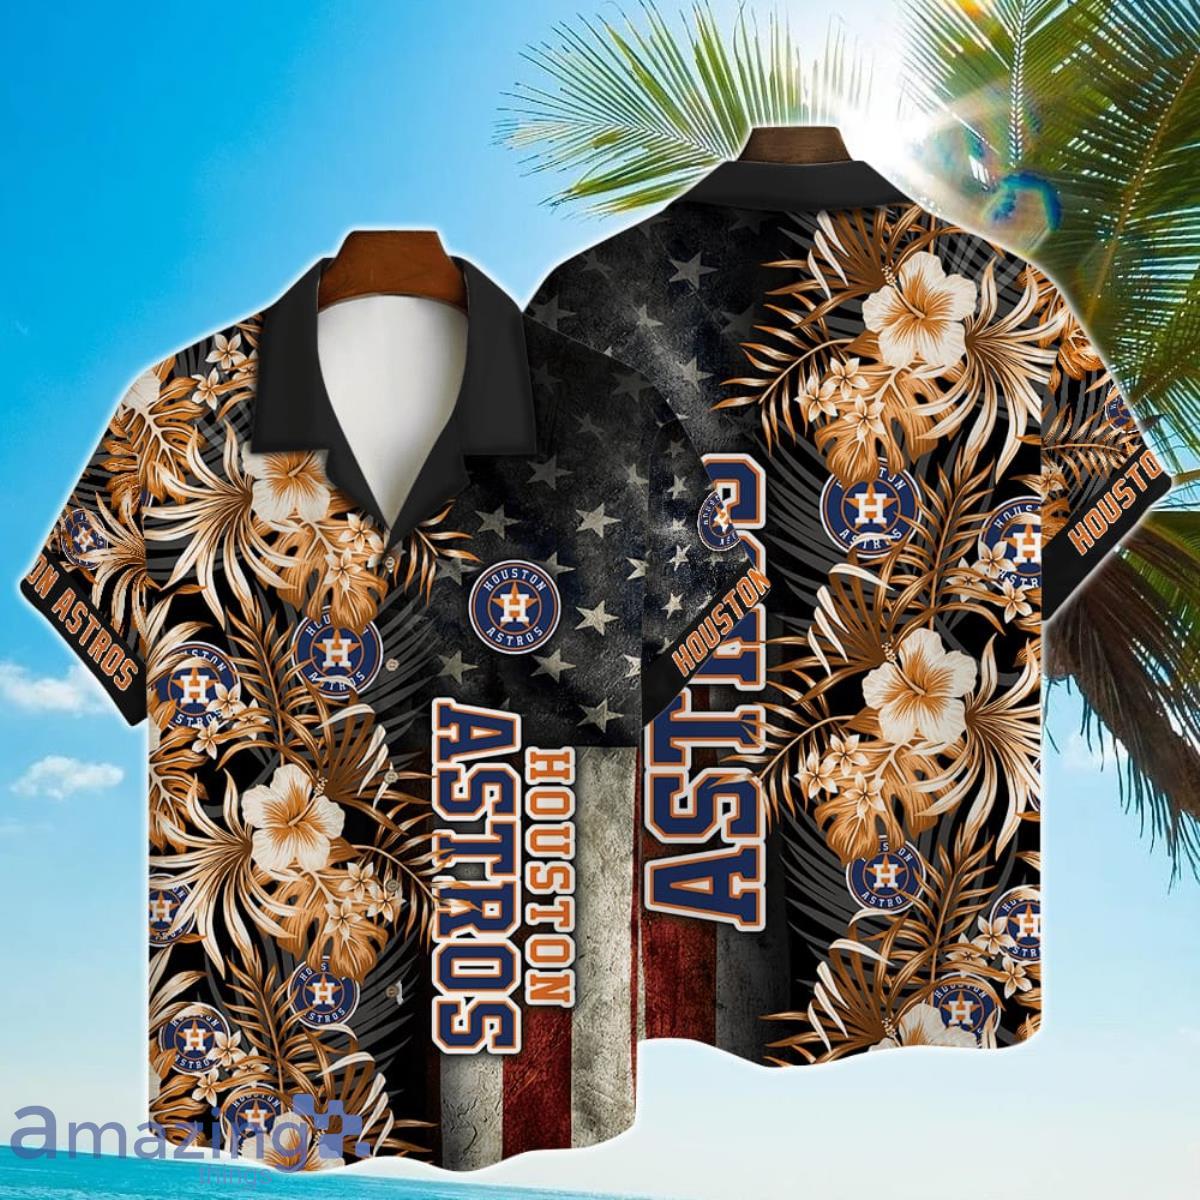 Vintage Astros Jersey Summer Light Shirt XL USA Made